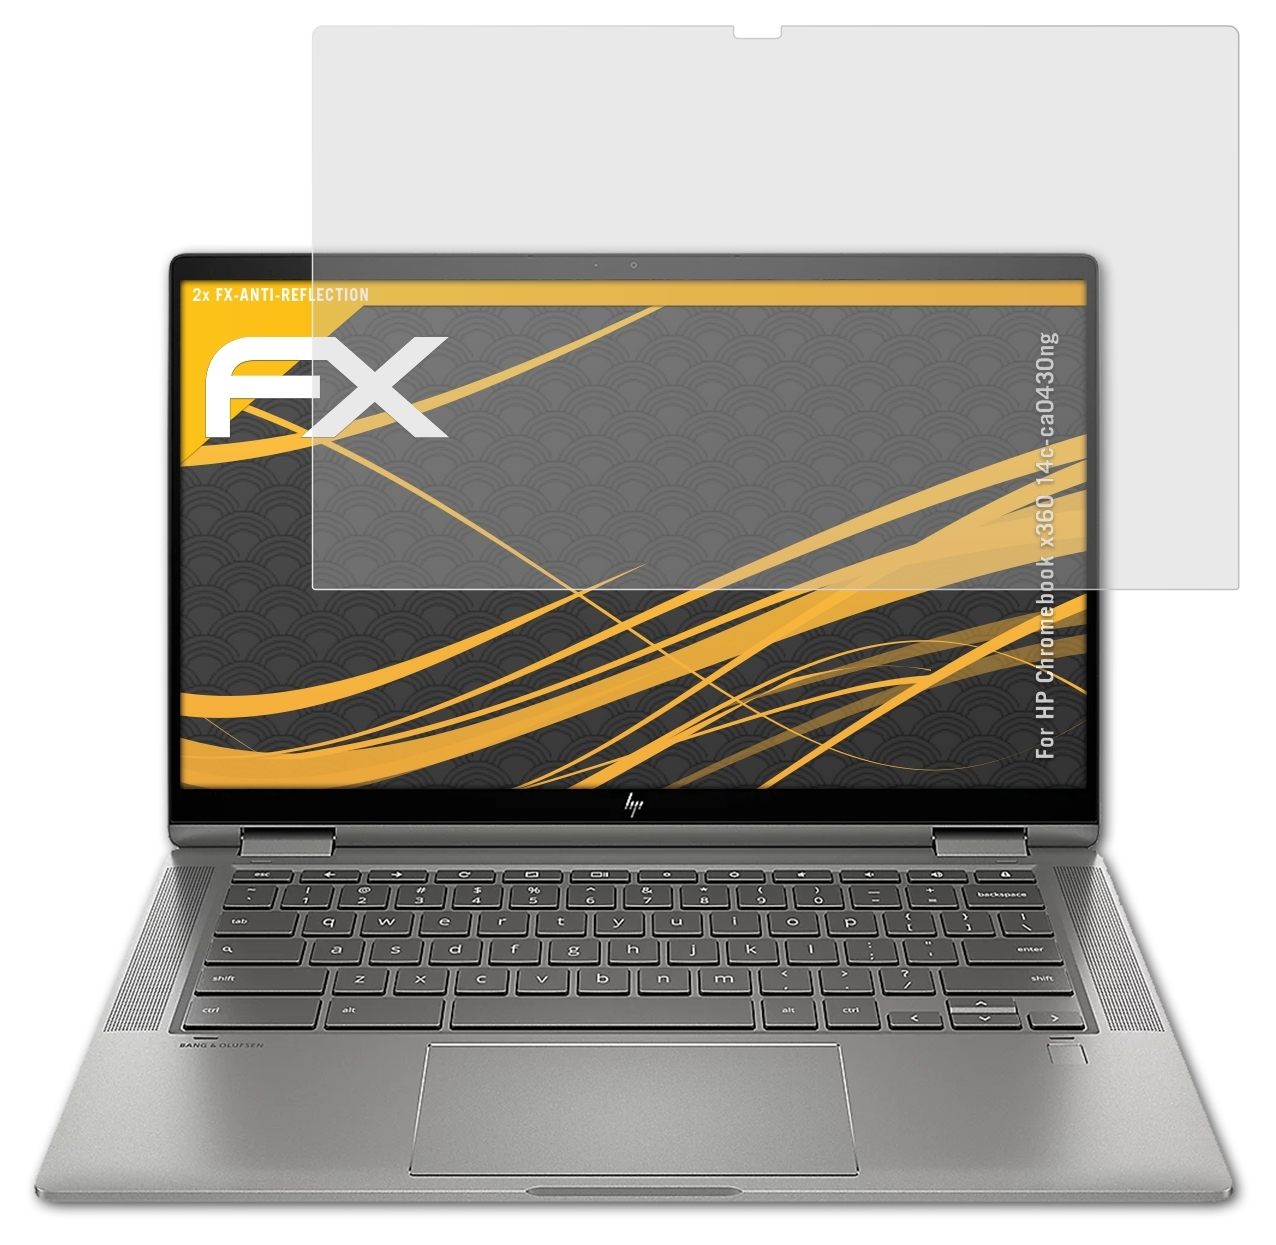 (14c-ca0430ng)) x360 2x Displayschutz(für Chromebook FX-Antireflex HP ATFOLIX